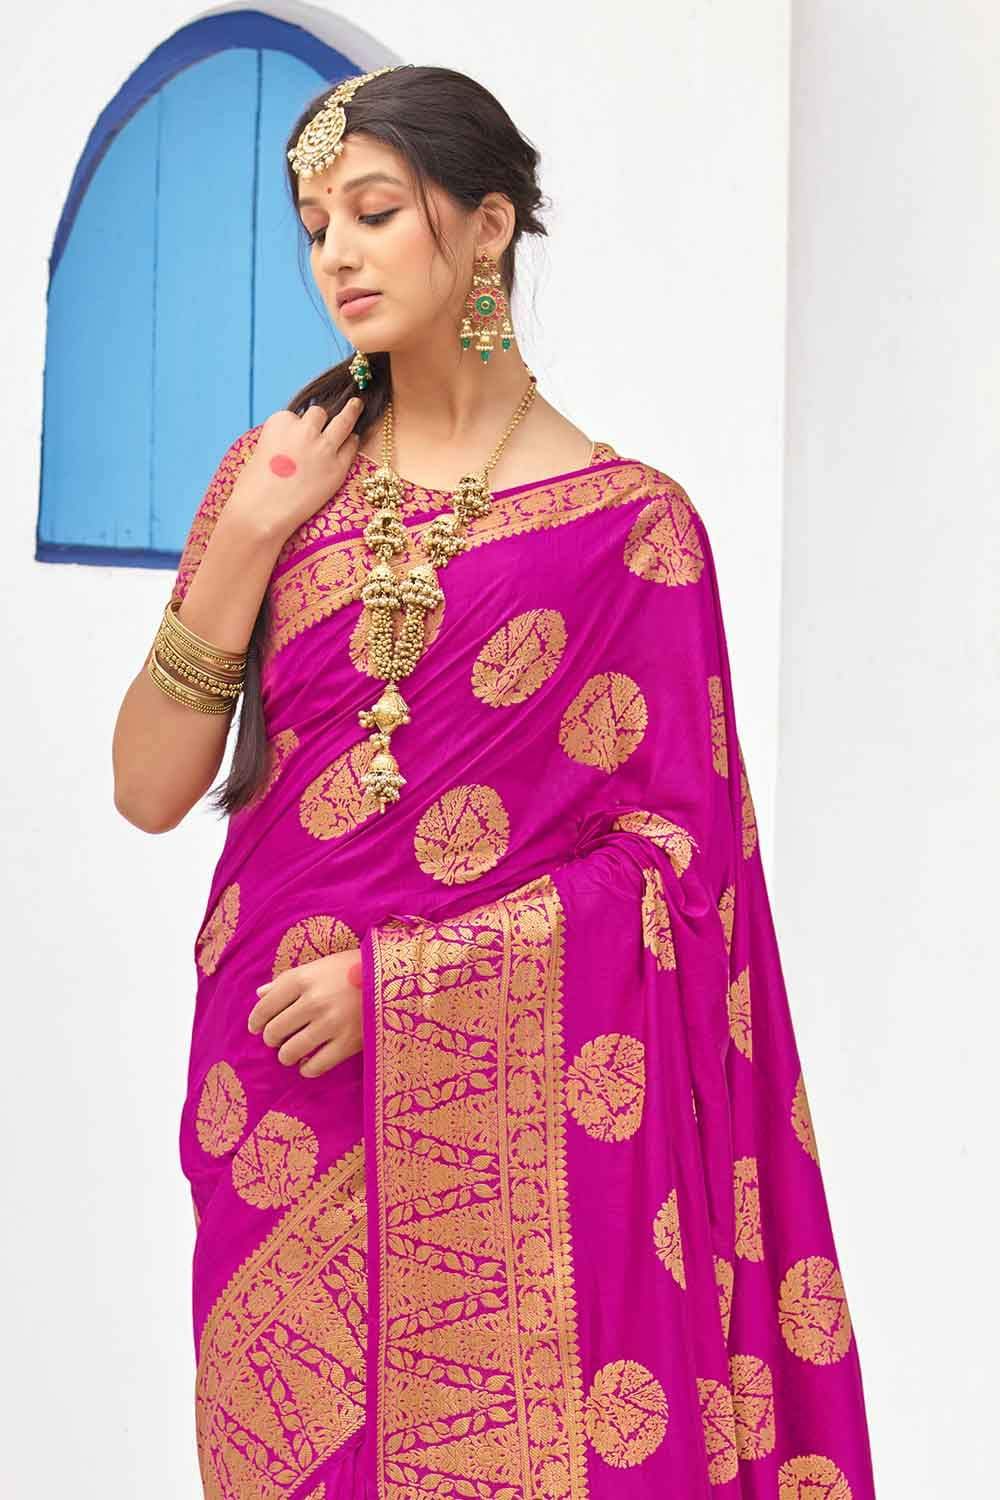 Banarasi Saree Spicy Pink Zari Butta Woven Banarasi Saree saree online